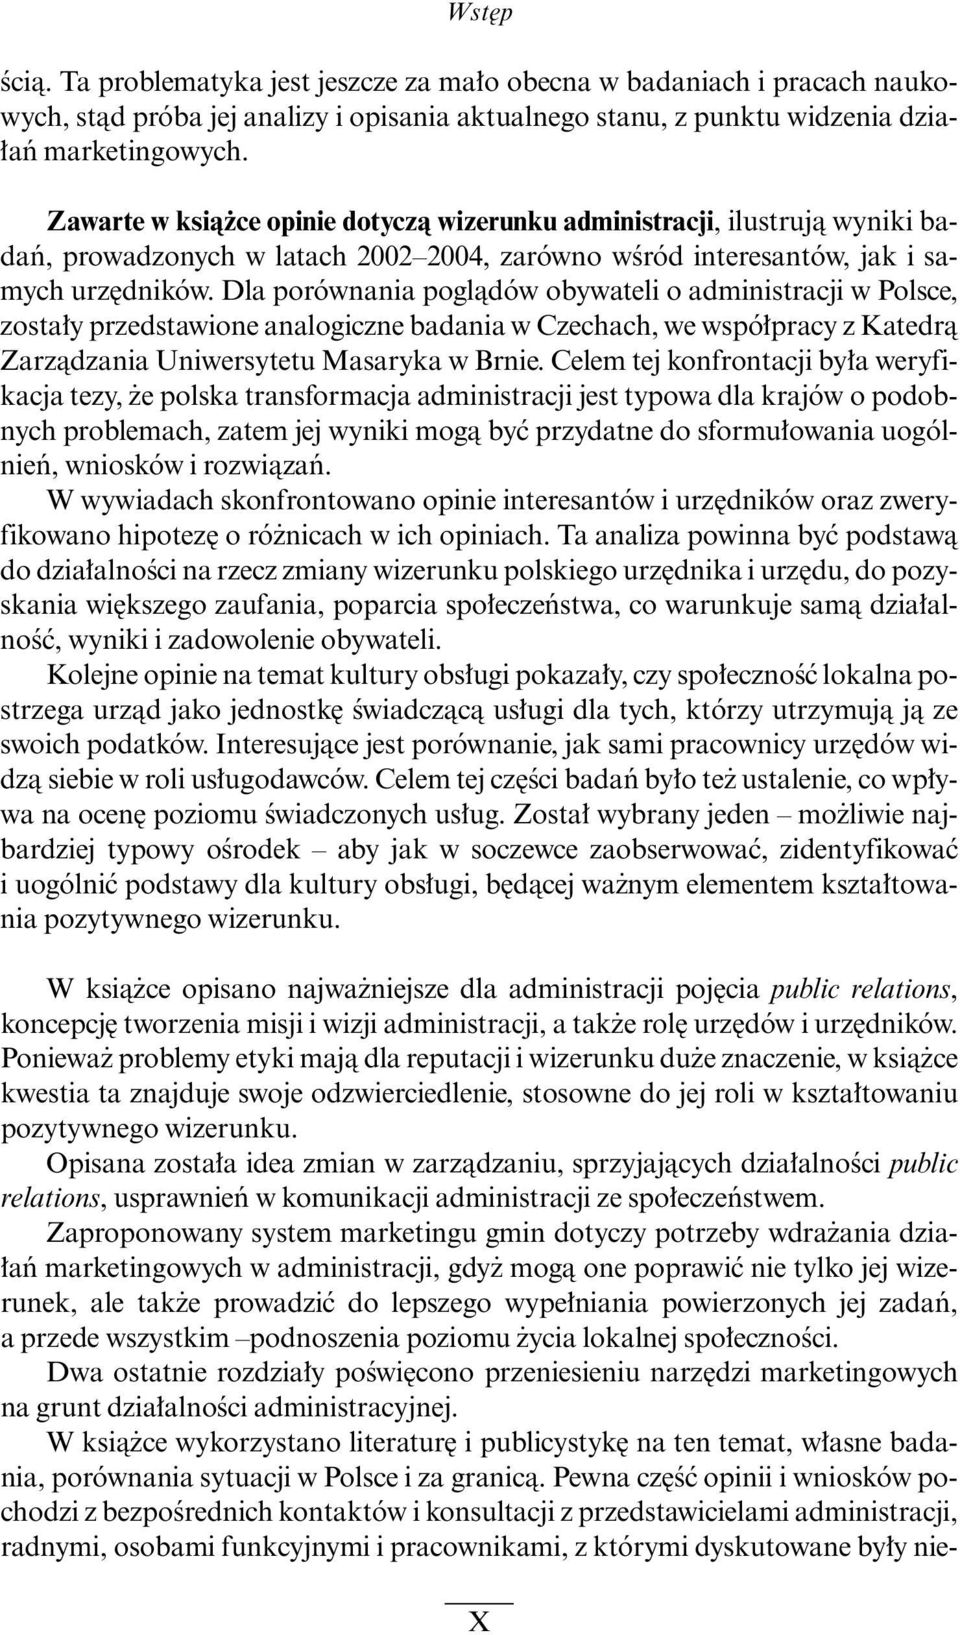 Dla porównania poglàdów obywateli o administracji w Polsce, zosta y przedstawione analogiczne badania w Czechach, we wspó pracy z Katedrà Zarzàdzania Uniwersytetu Masaryka w Brnie.